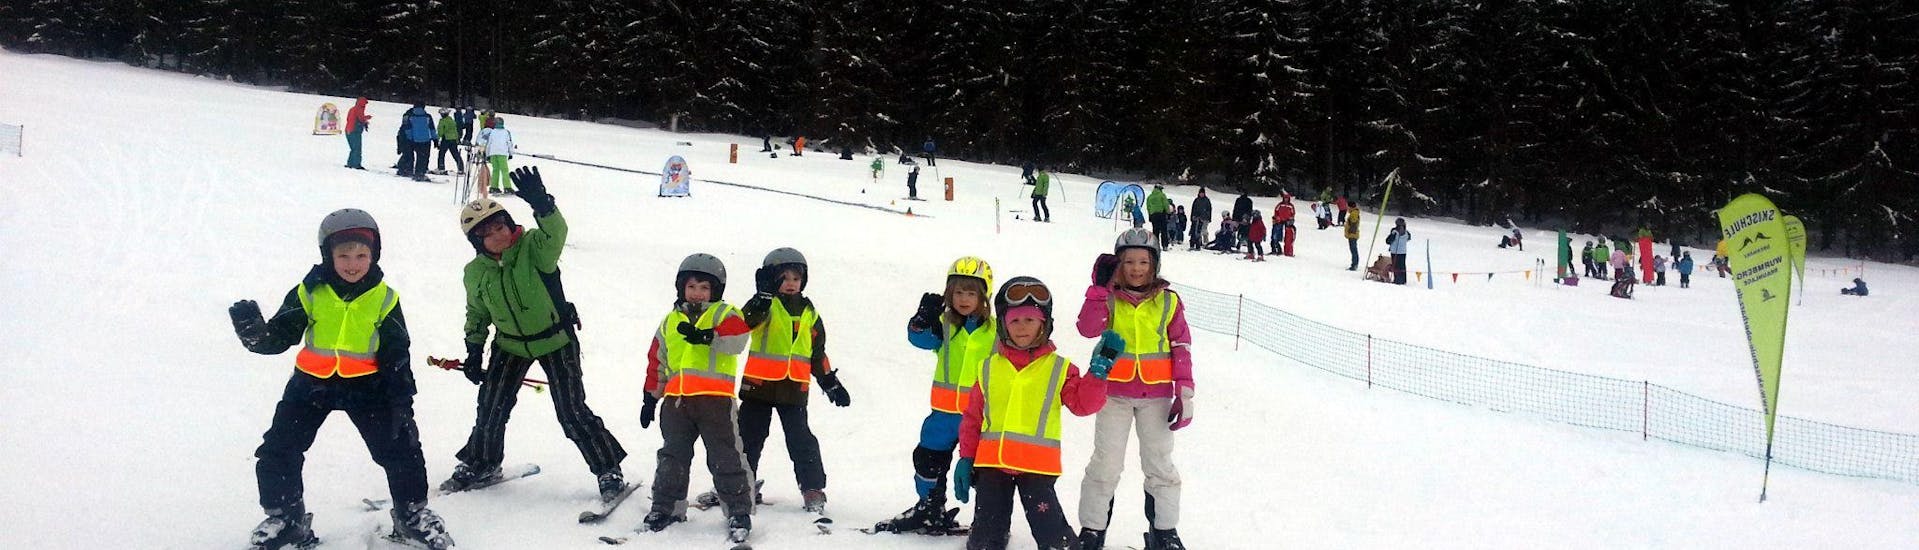 Lezioni di sci per bambini a partire da 11 anni con esperienza.